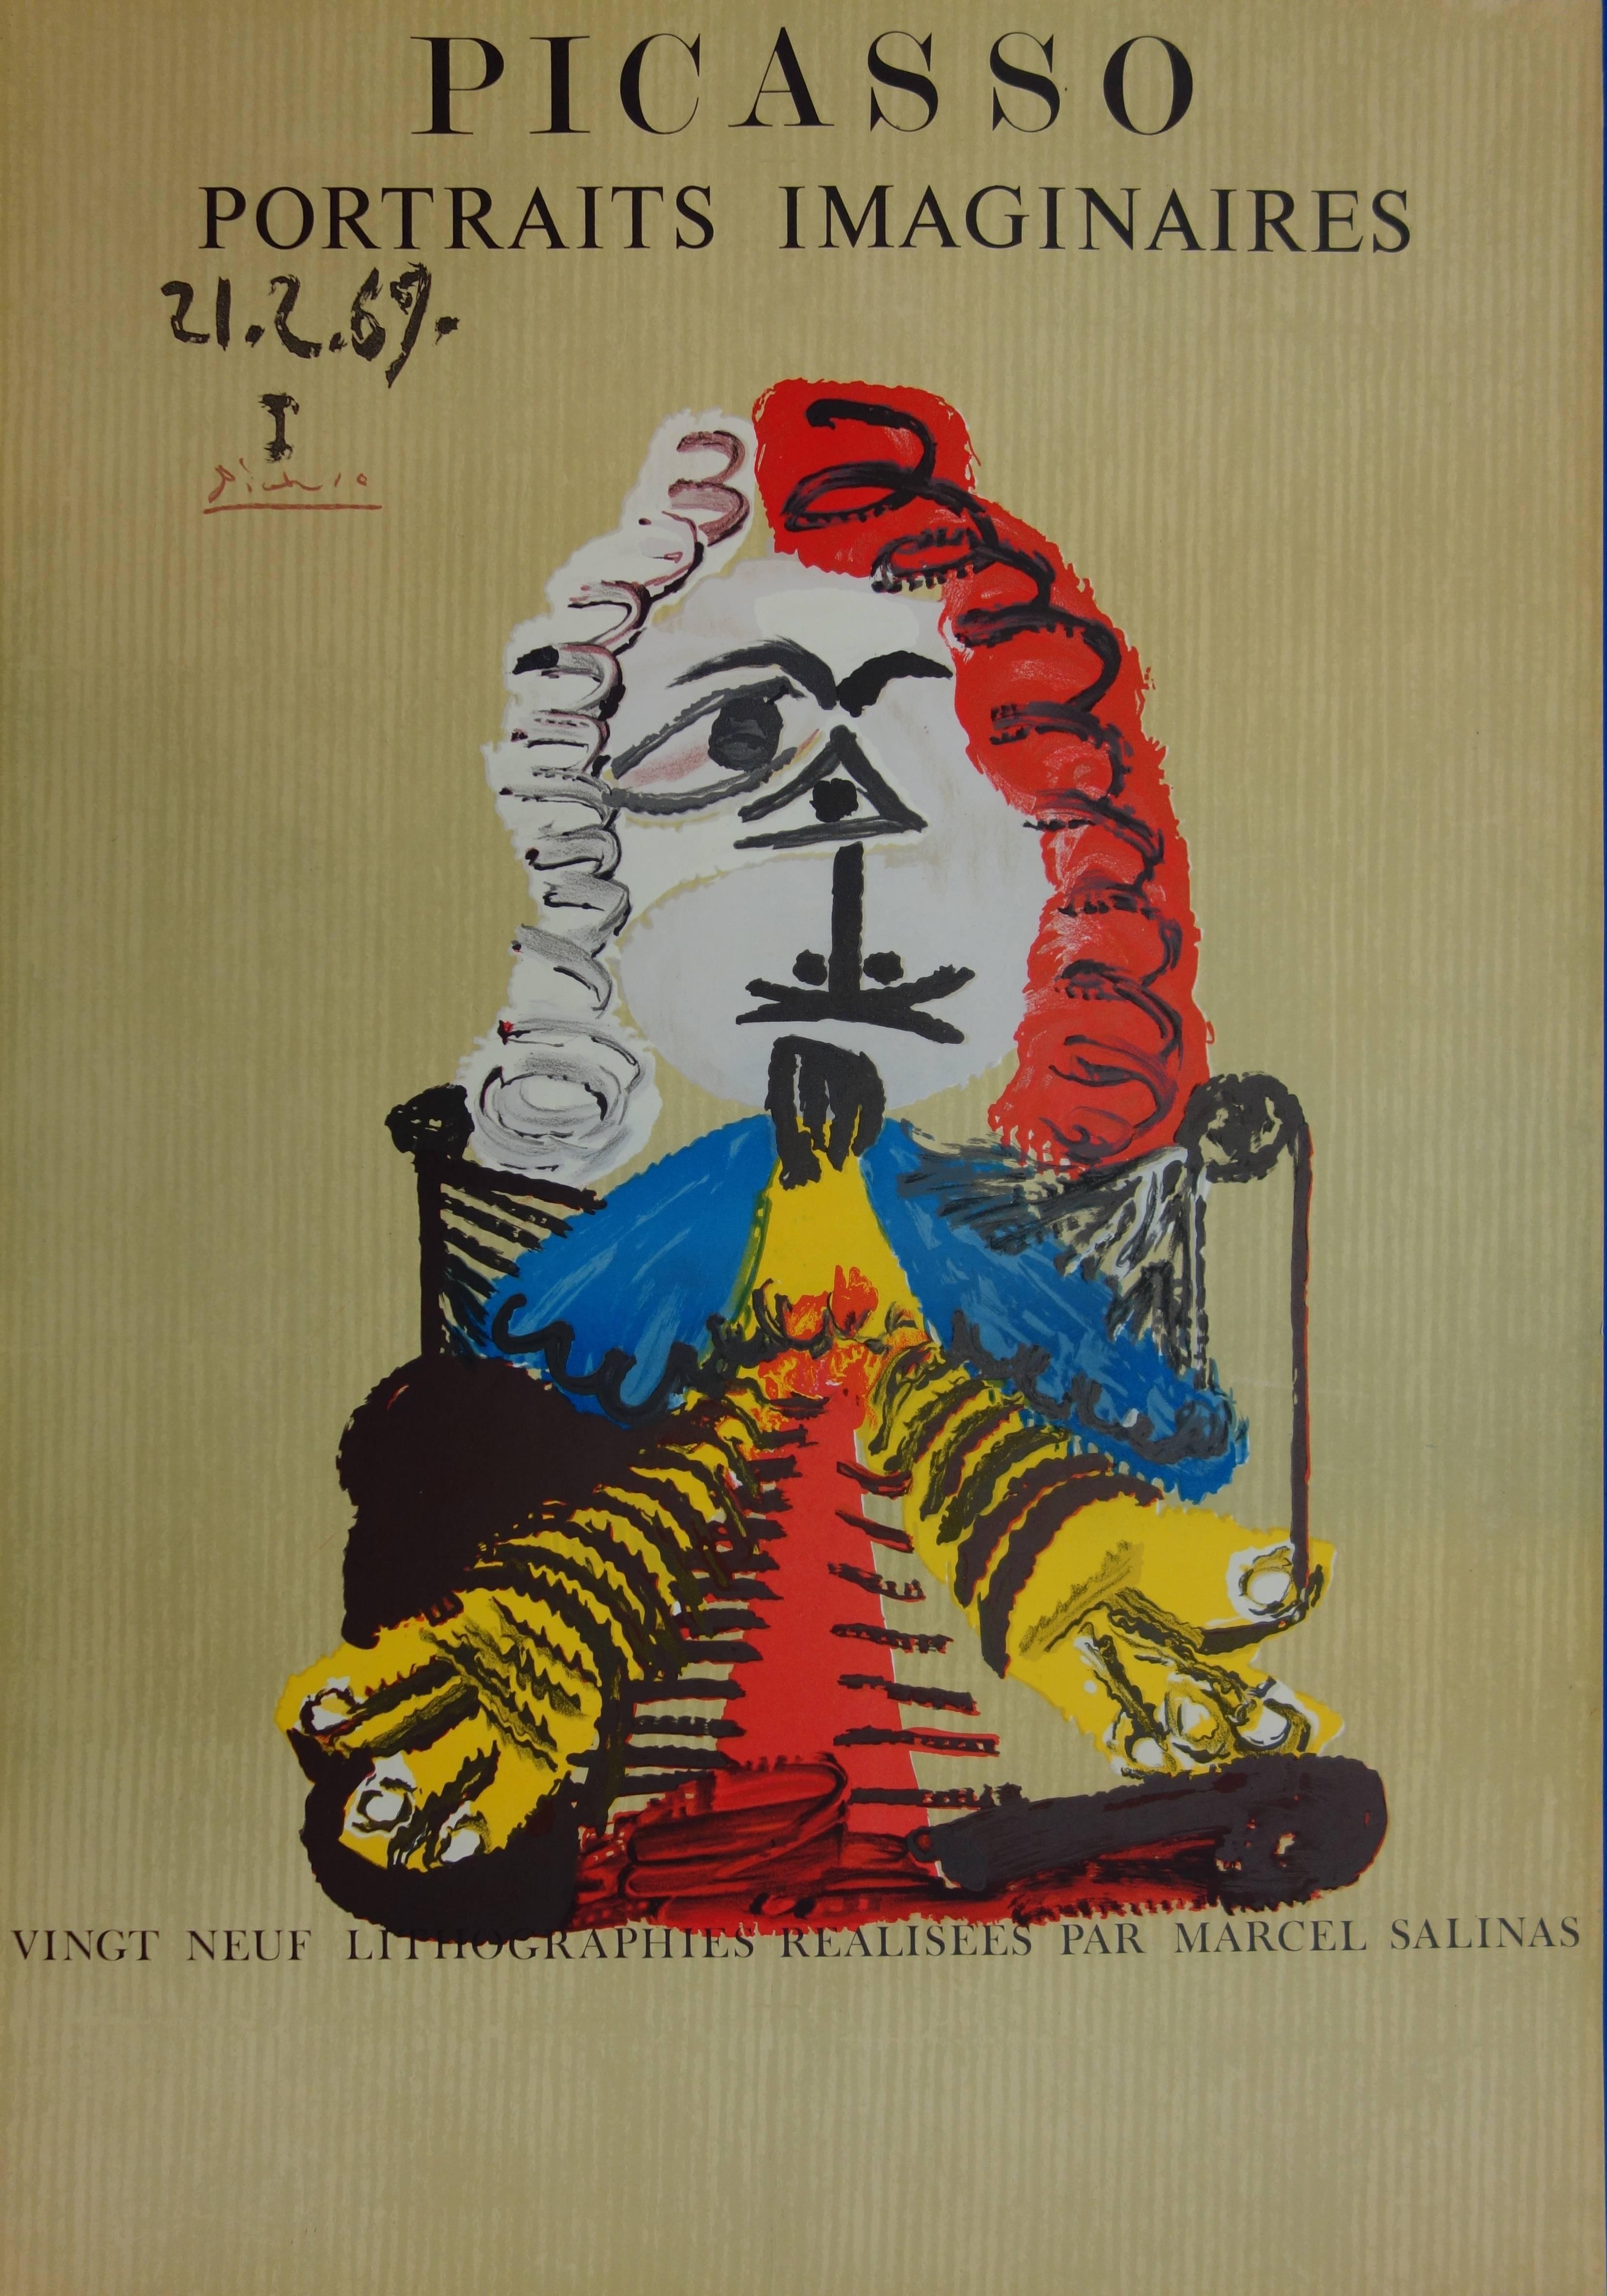 (after) Pablo Picasso Portrait Print - Imaginary Portraits : Elegant Man - Lithograph - 1971